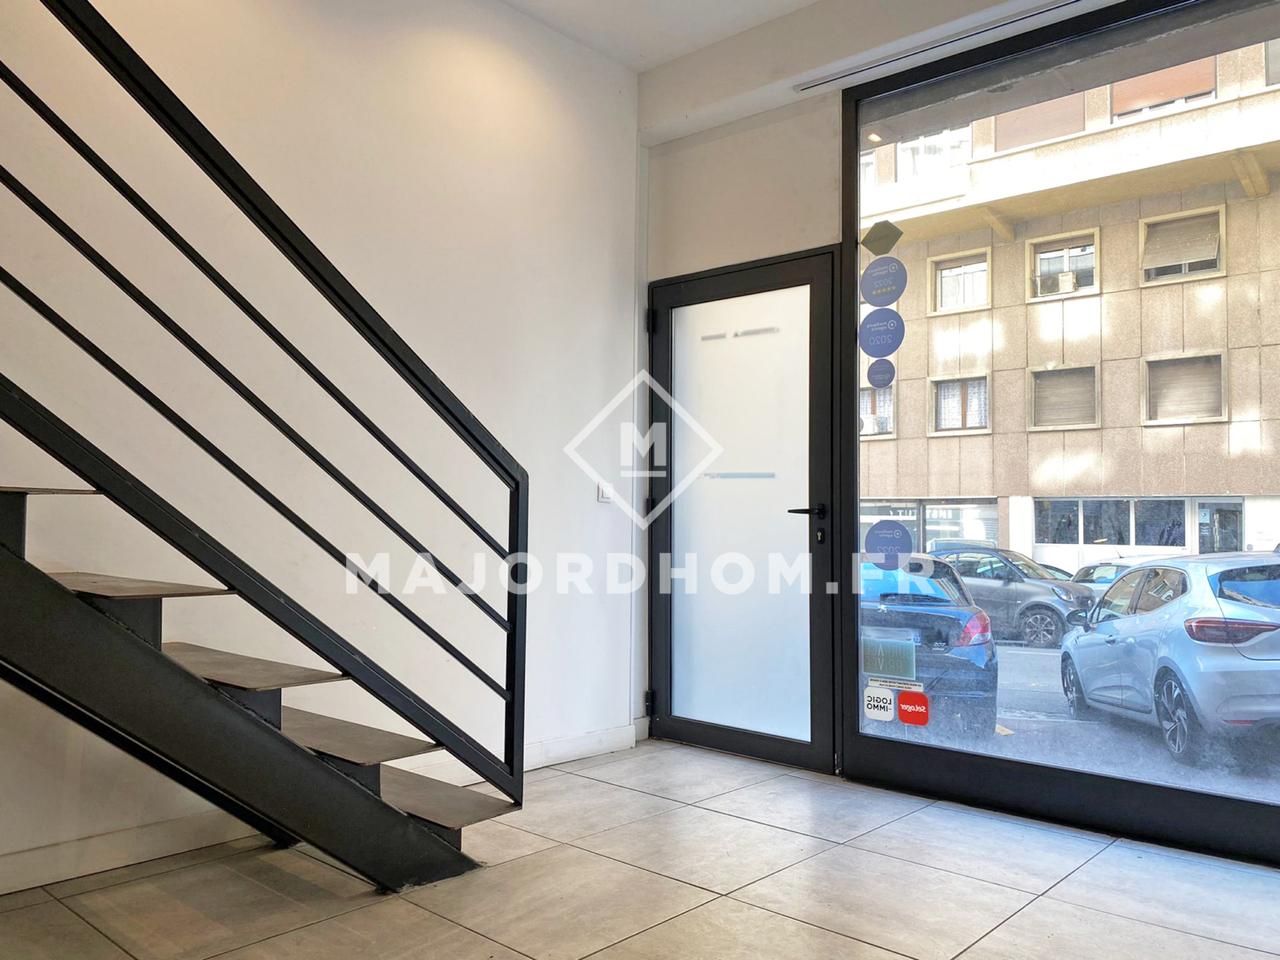 Vente Appartement 55m² 2 Pièces à Marseille (13002) - Agence Immobilière Majordhom